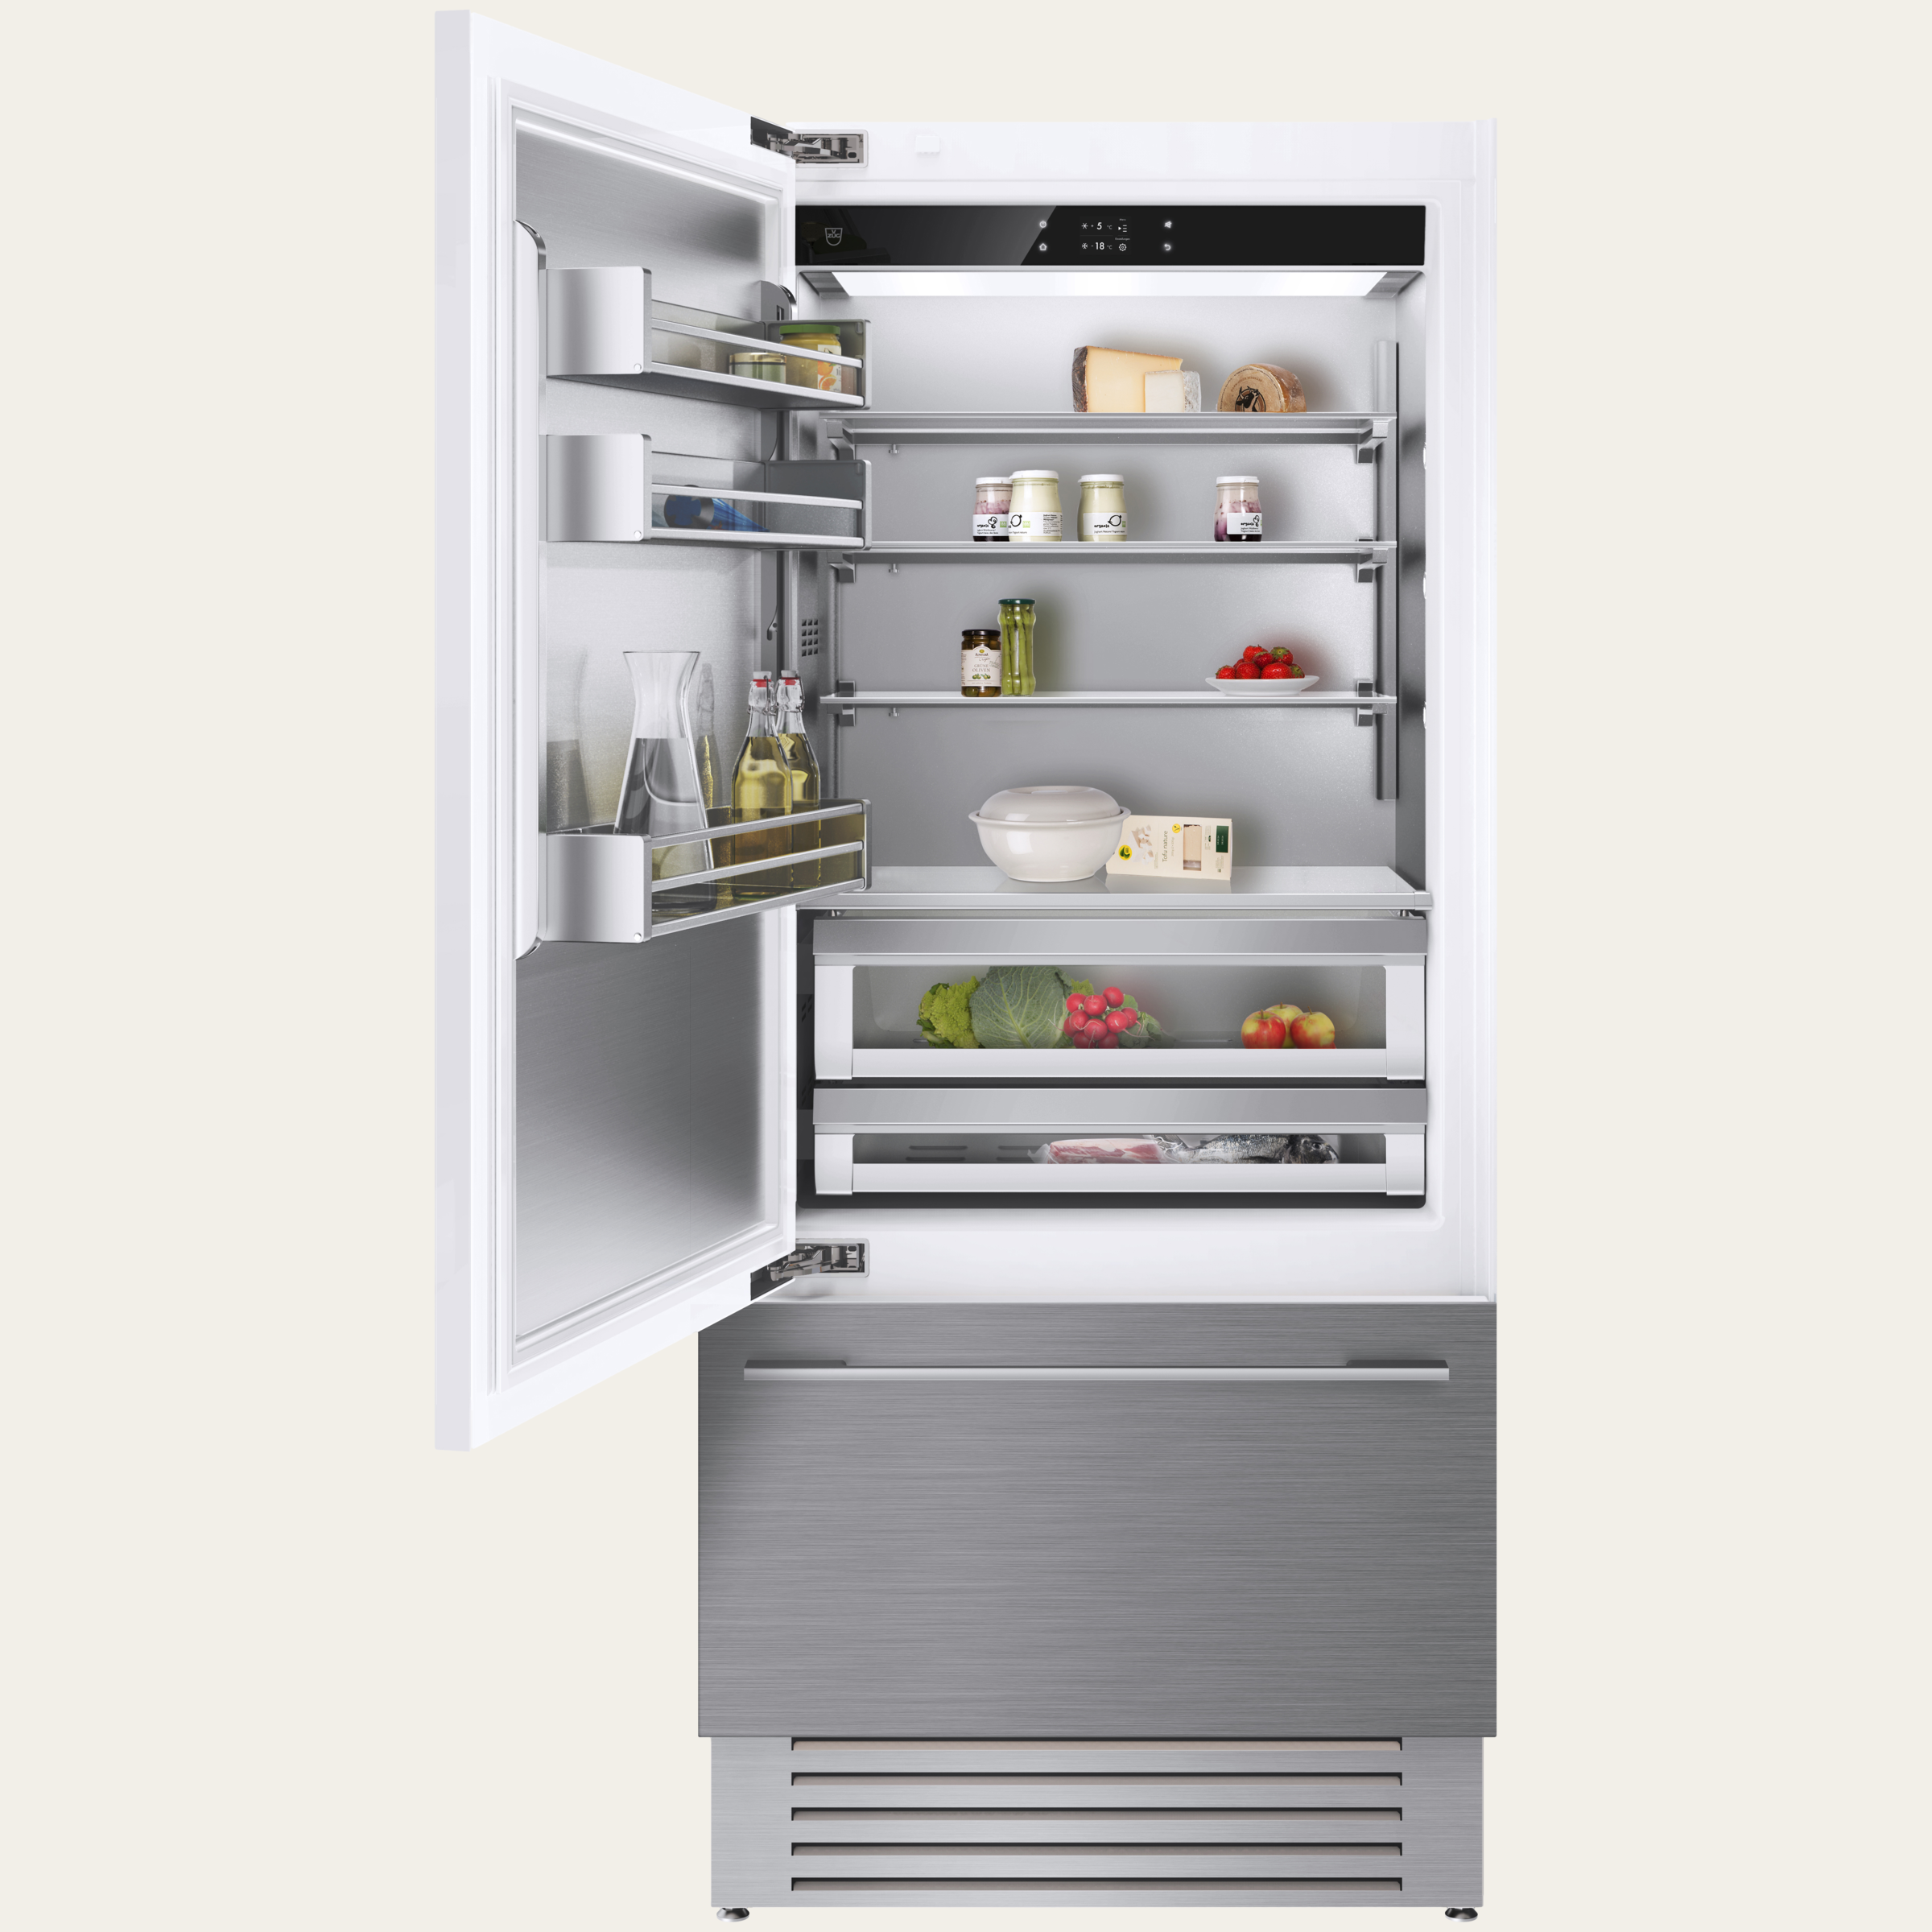 V-ZUG Refrigerator/freezer CombiCooler V6000 Supreme, Standard width: 90 cm, Standard height: 205 cm, Fully integratable, Door hinge: Left, TouchControl, NoFrost